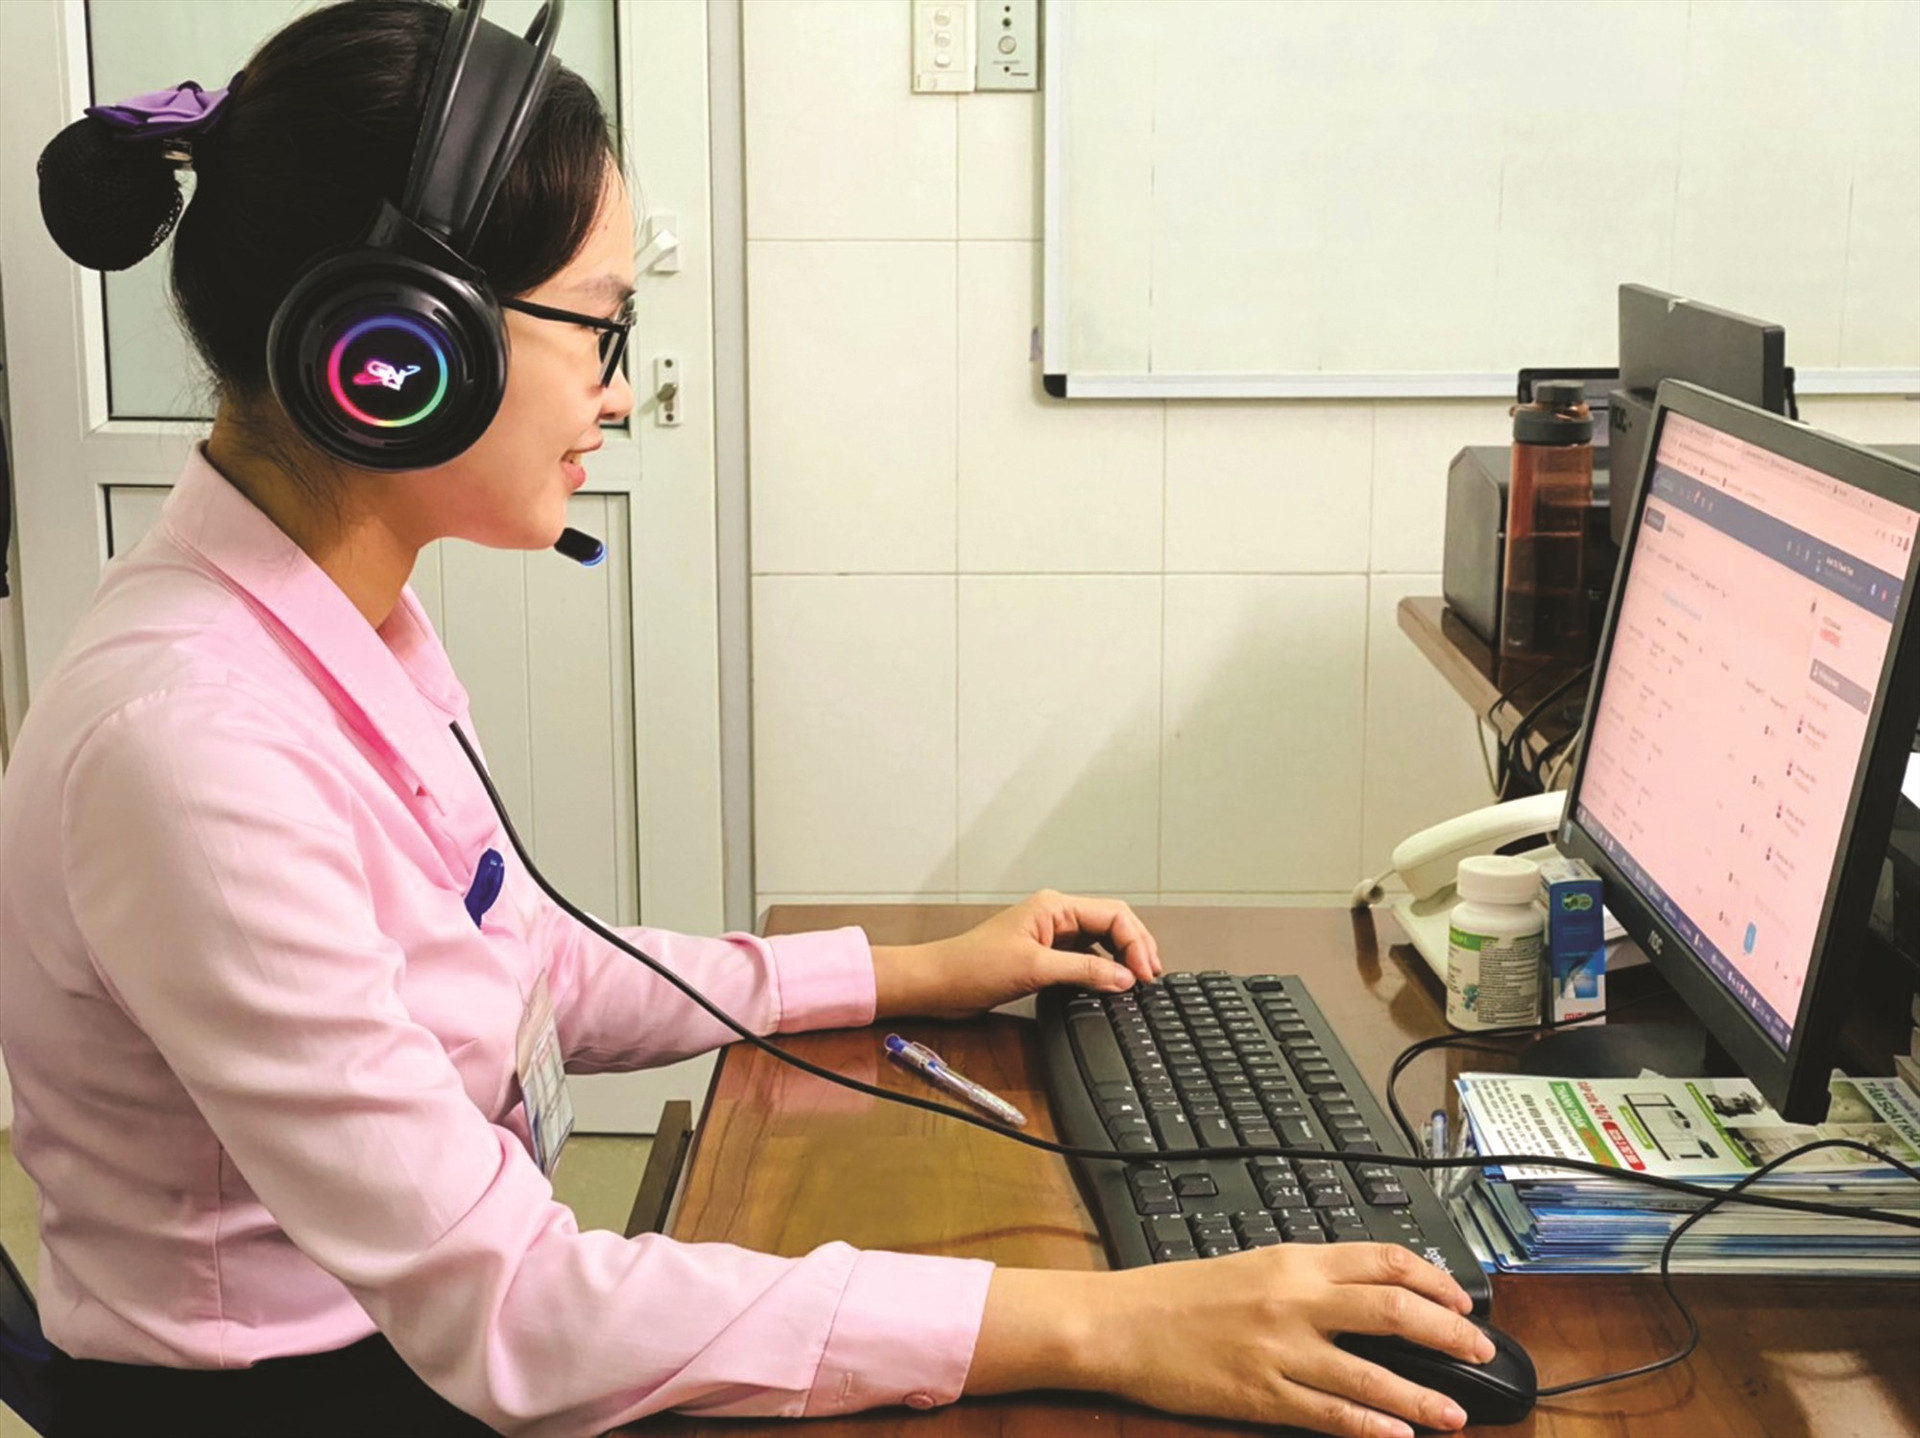 Với sự hỗ trợ của công nghệ, nhân viên Call center dễ dàng gọi điện chăm sóc và hỗ trợ khách hàng sau khi xuất viện.